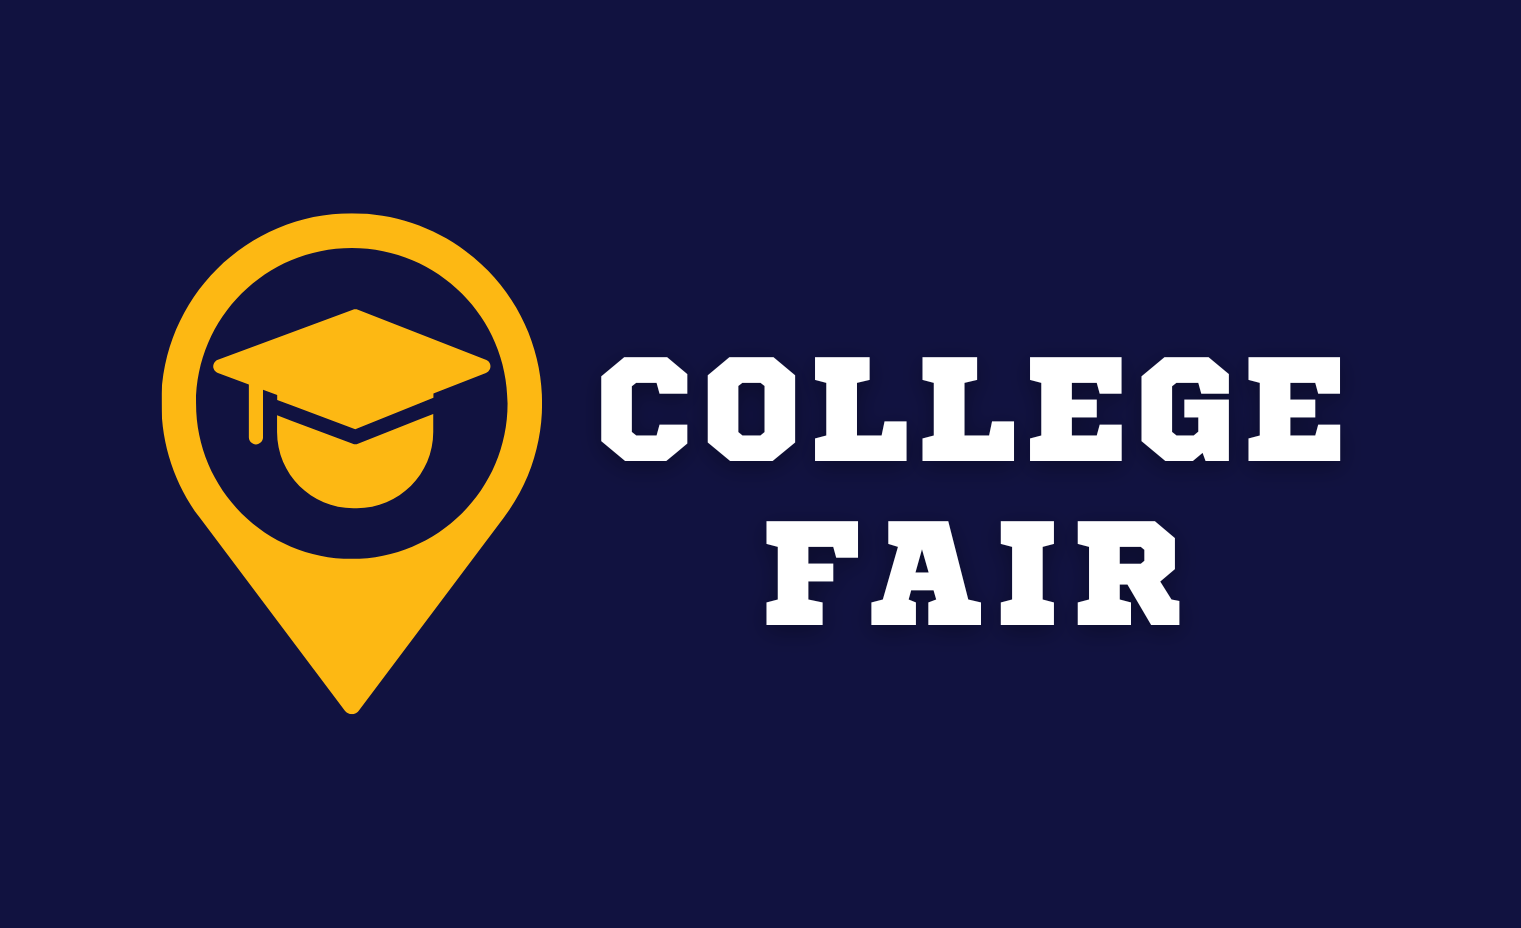 College Fair graphic